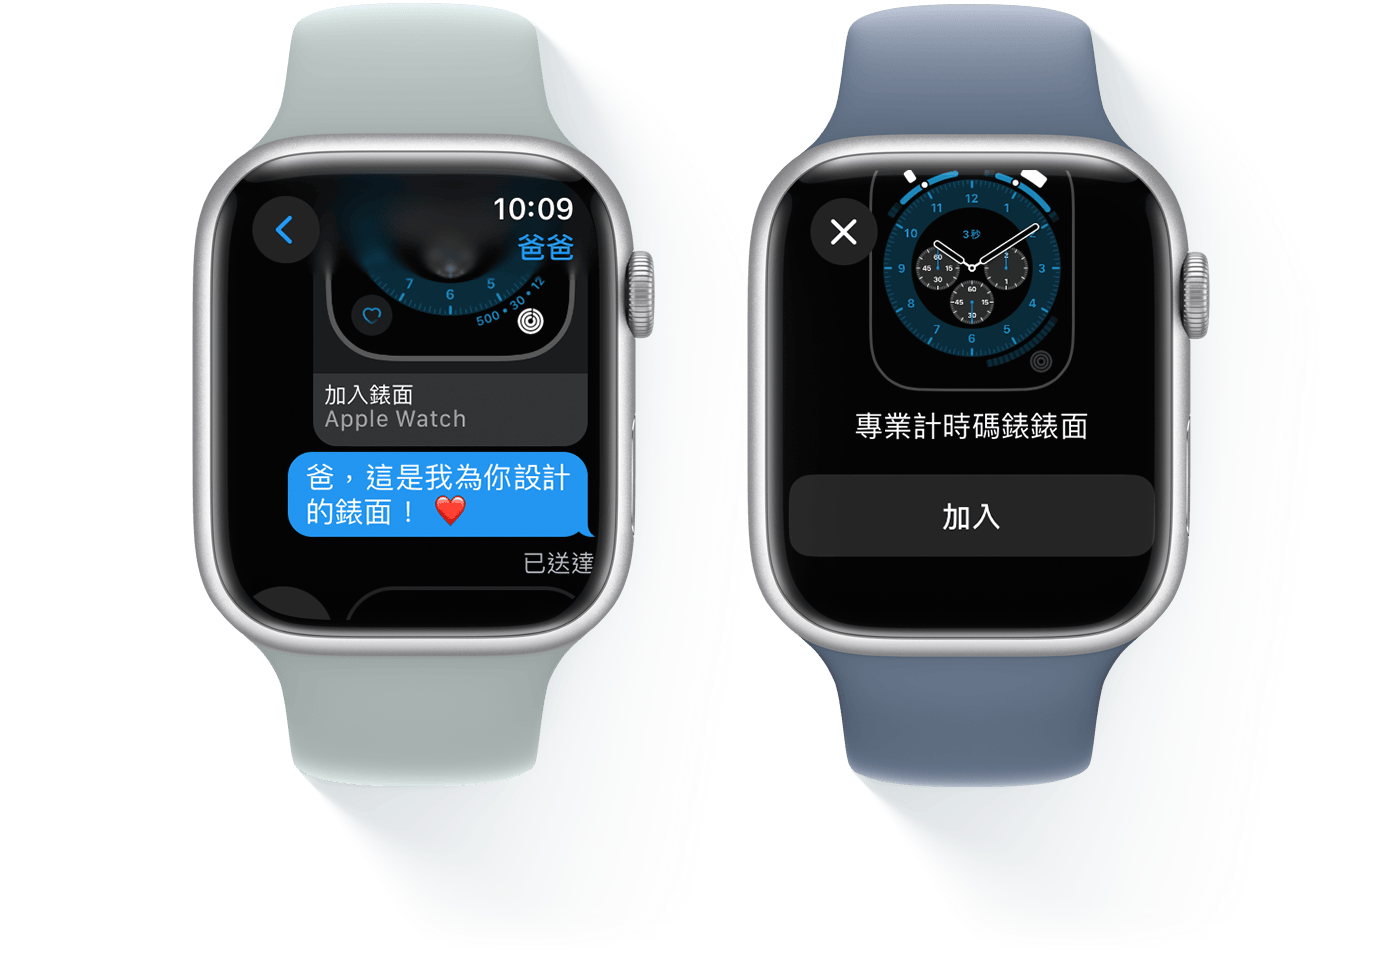 兩個 Apple Watch，其中一個顯示文字訊息對話，另一個顯示「專業計時碼錶」錶面